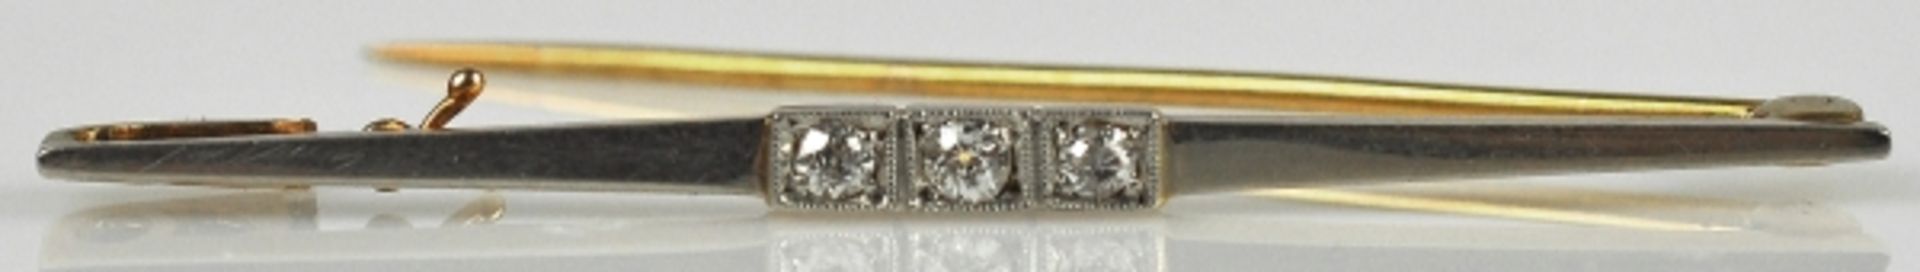 FEINE STABBROSCHE bicolor, besetzt mit 3 kleinen Diamanten, gesamt um 0,15ct, weiß, in Weiß/